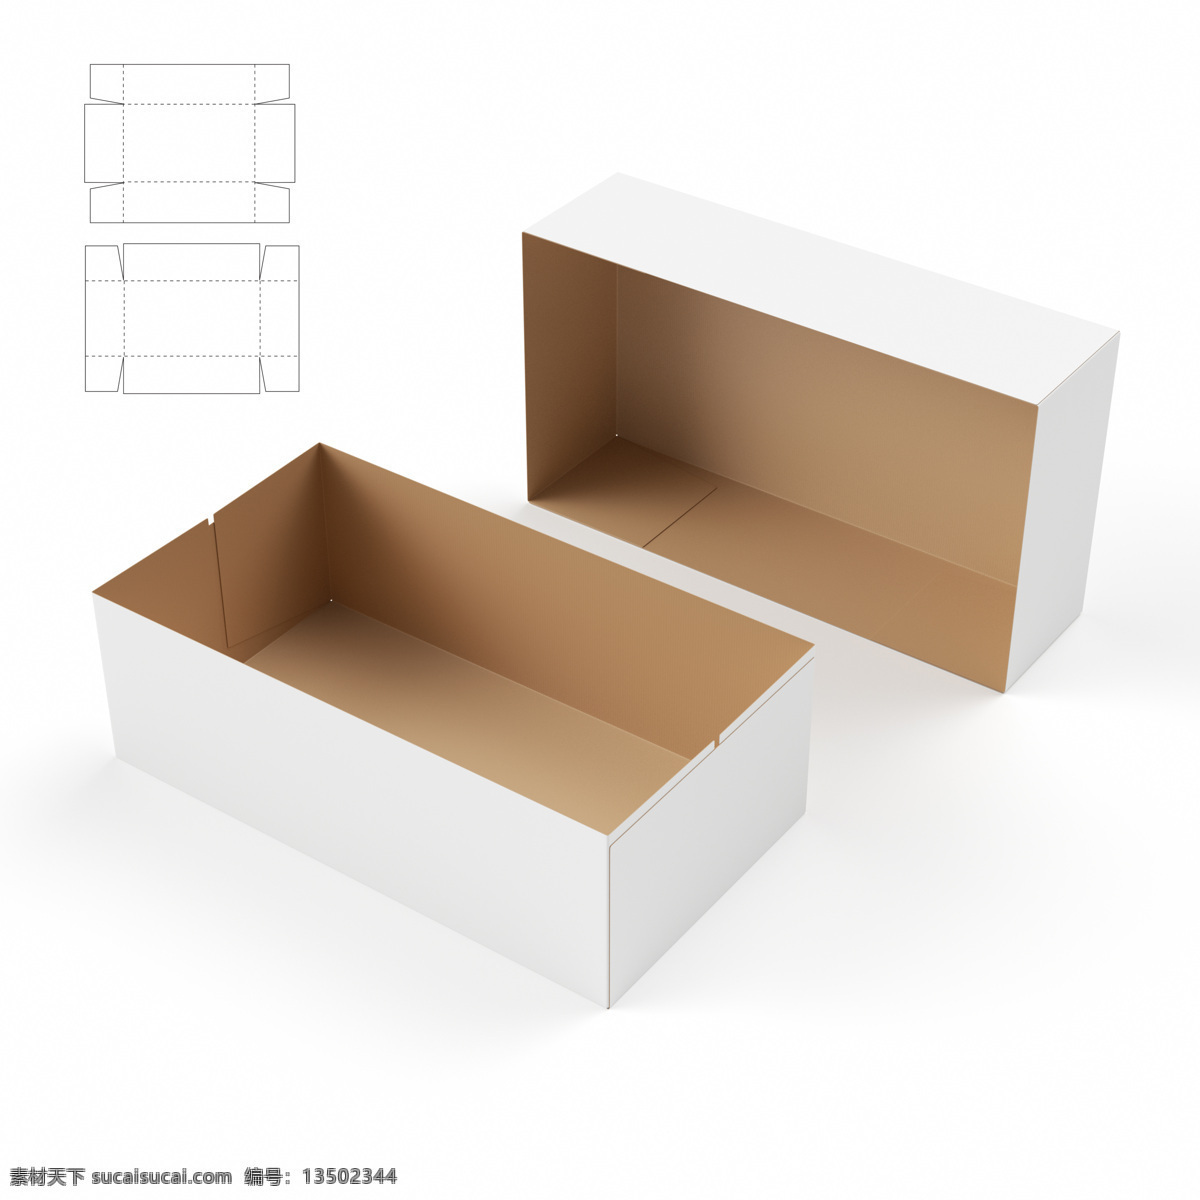 长方形 纸盒 钢刀 线 纸盒设计 包装盒设计 包装盒展开图 包装平面图 钢刀线 包装设计 包装效果图 空白包装盒 盒子 产品包装盒 其他类别 生活百科